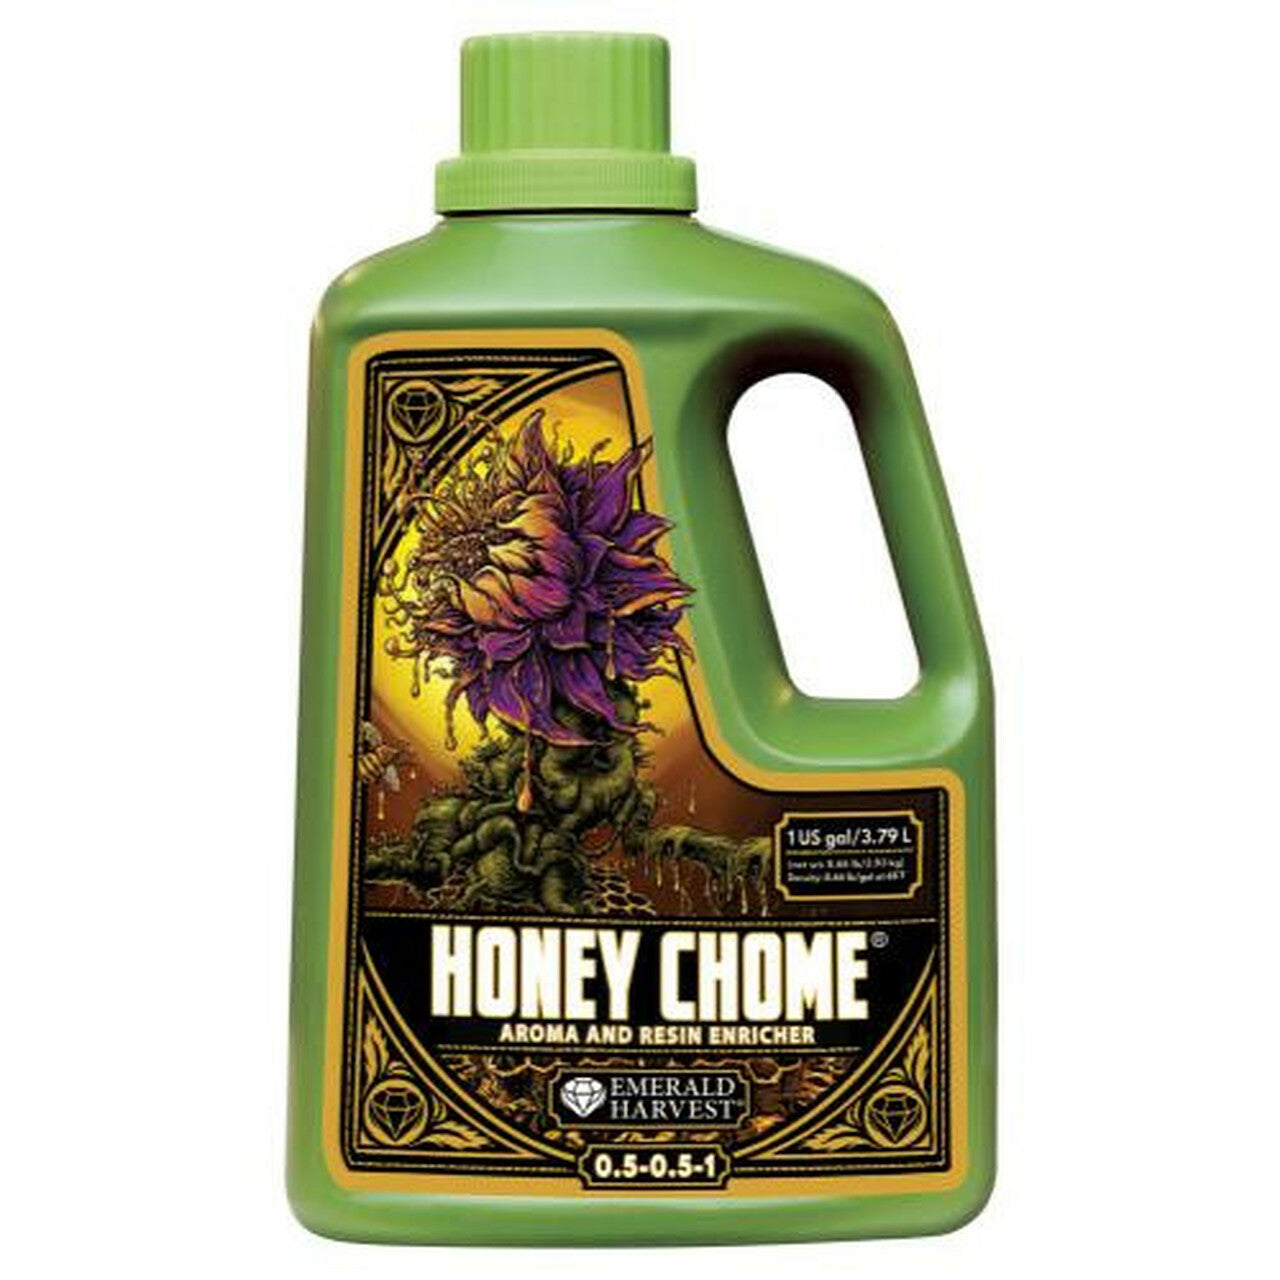 Honey Chome, 0.5-0.5-1, 1 gal